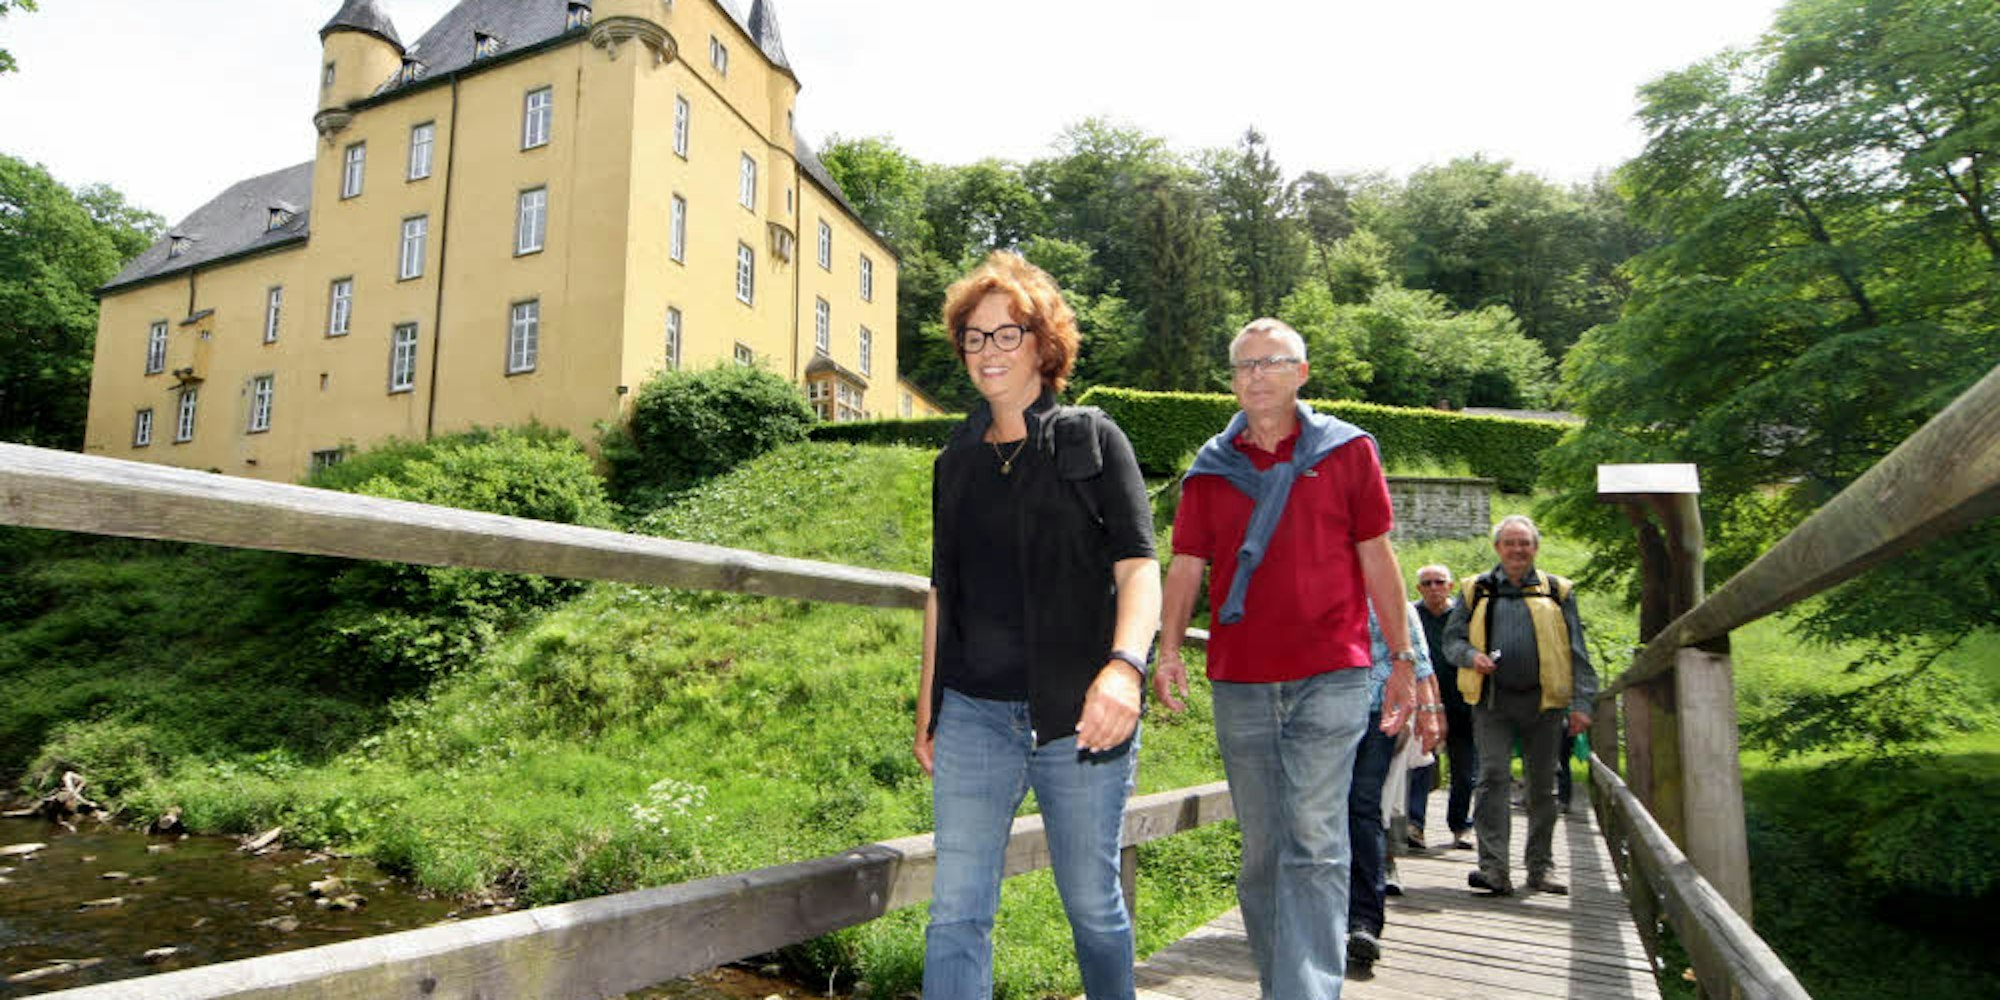 Nach dem Besuch auf Schloss Strauweiler wandert die Lesergruppe über einen Privatsteg des Prinzen weiter nach Altenberg.